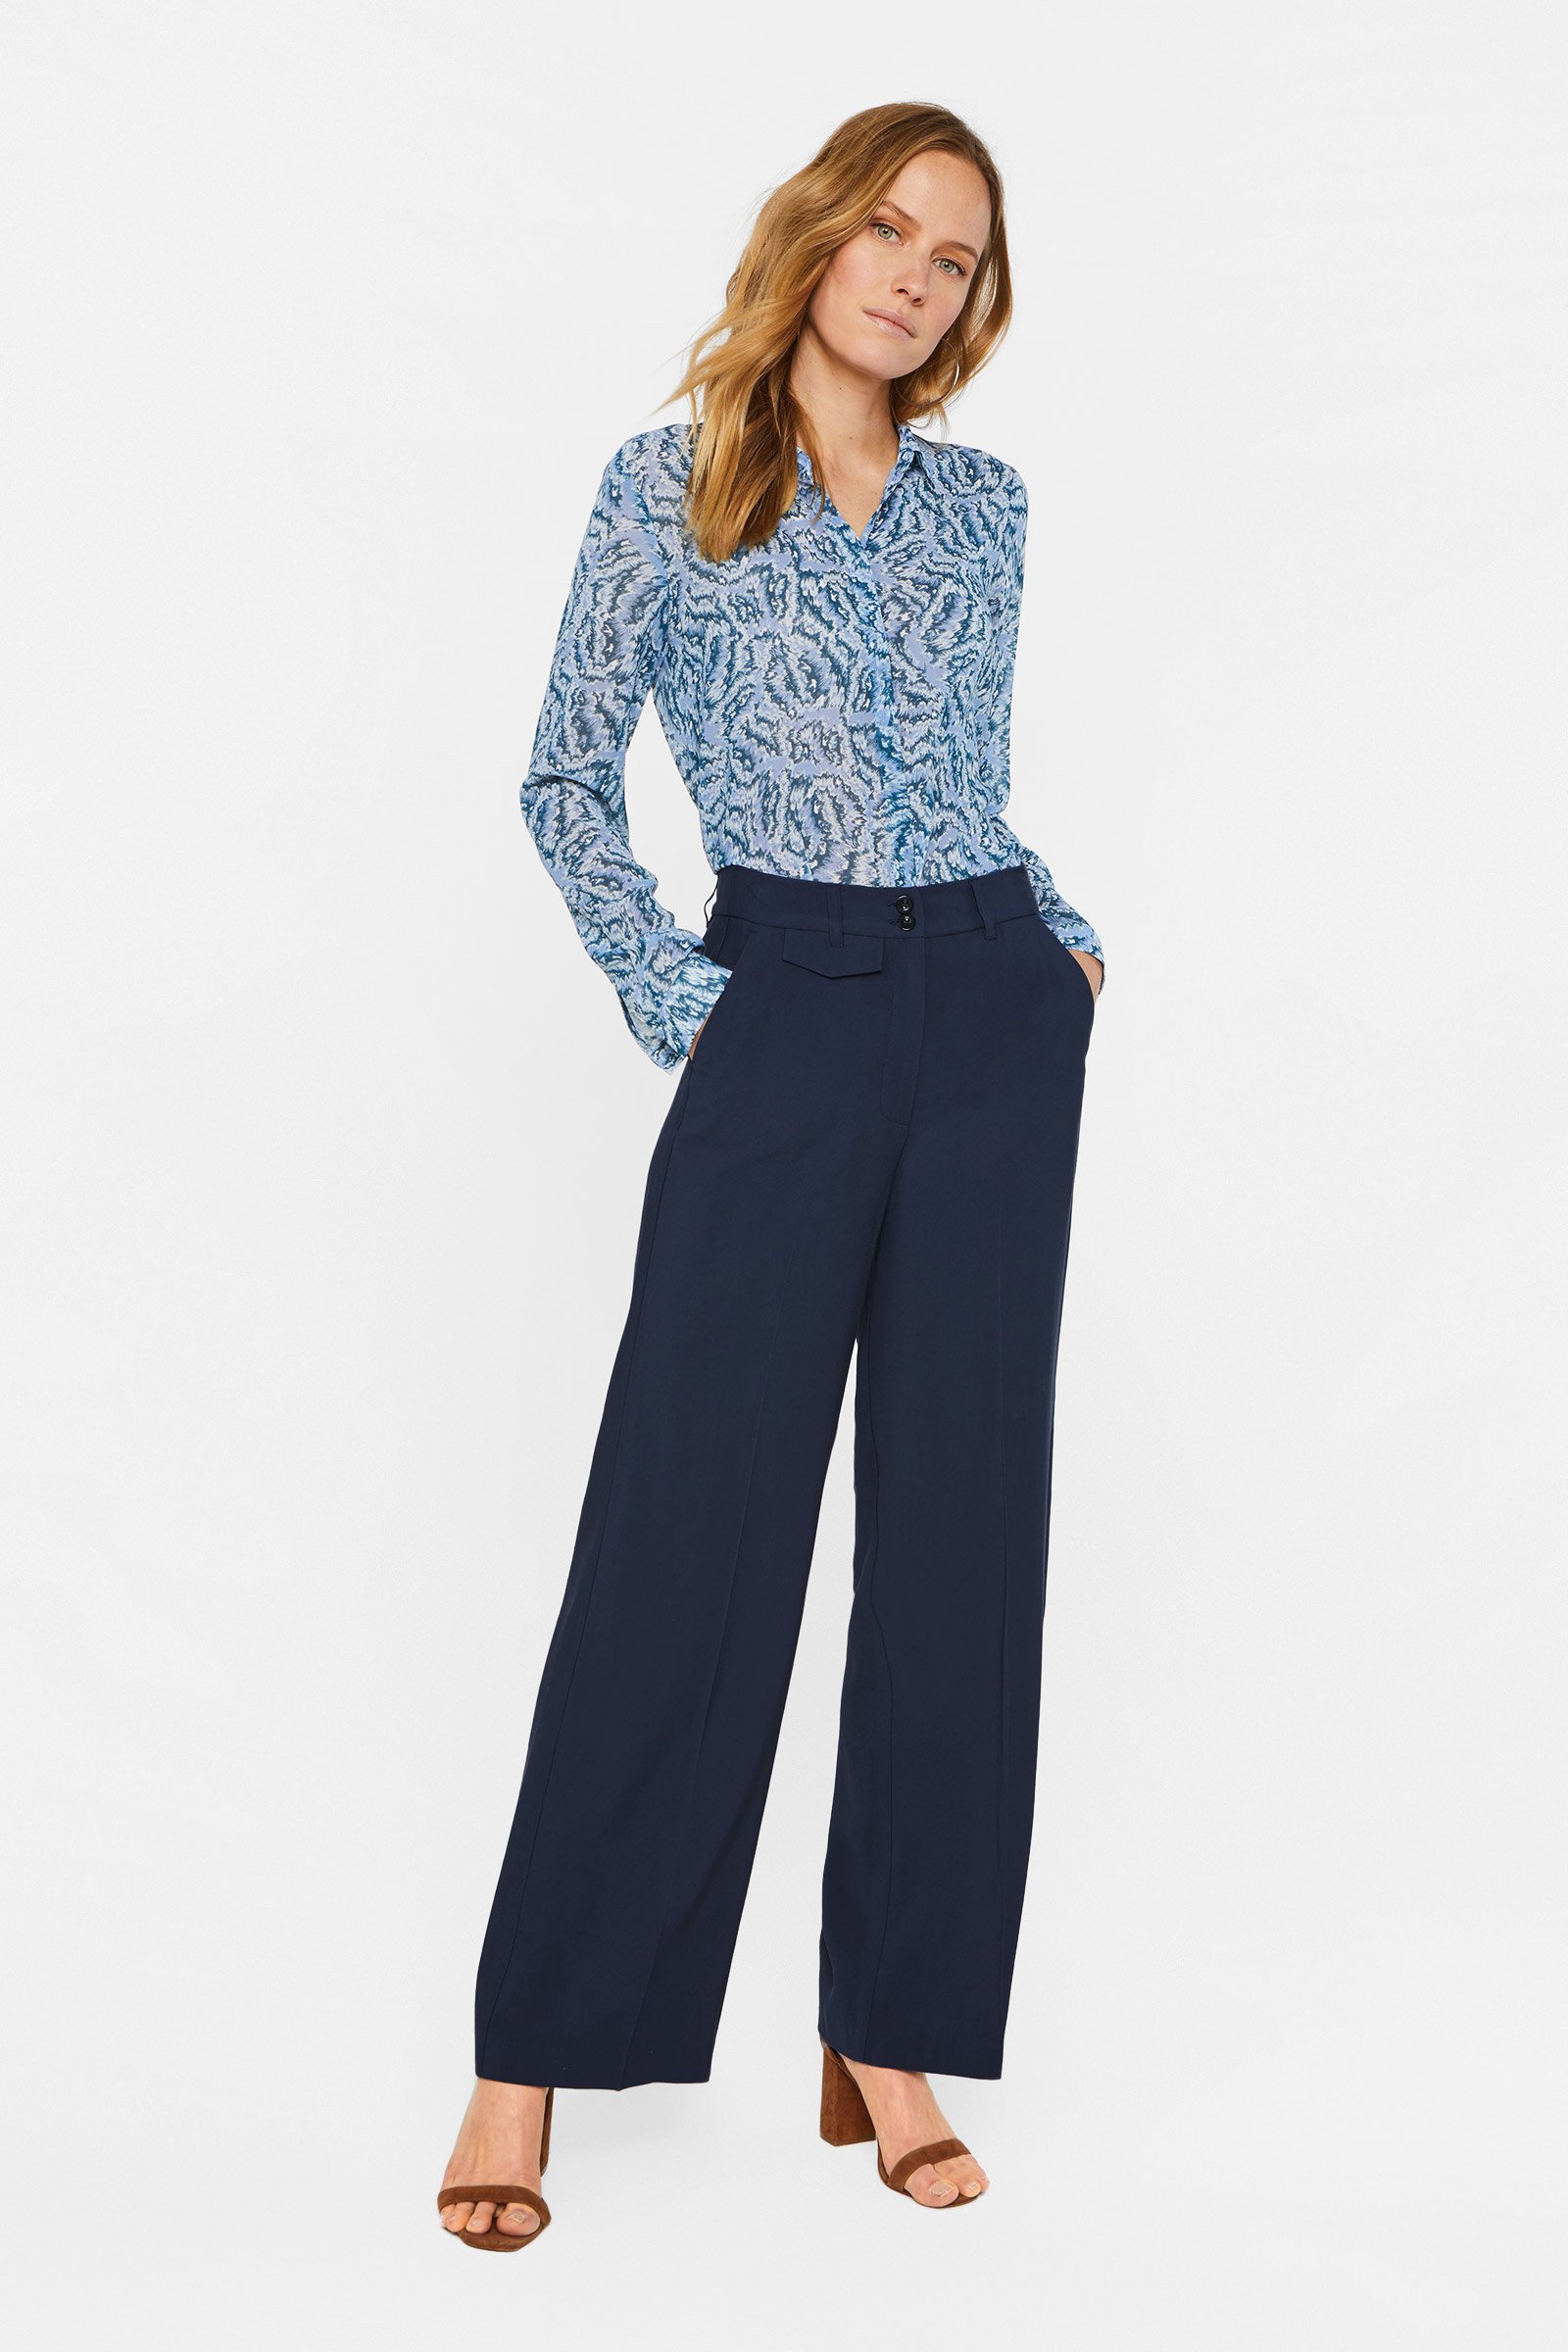 Hedendaags Dames broek met wijde pijpen | 95162218 - WE Fashion DF-69